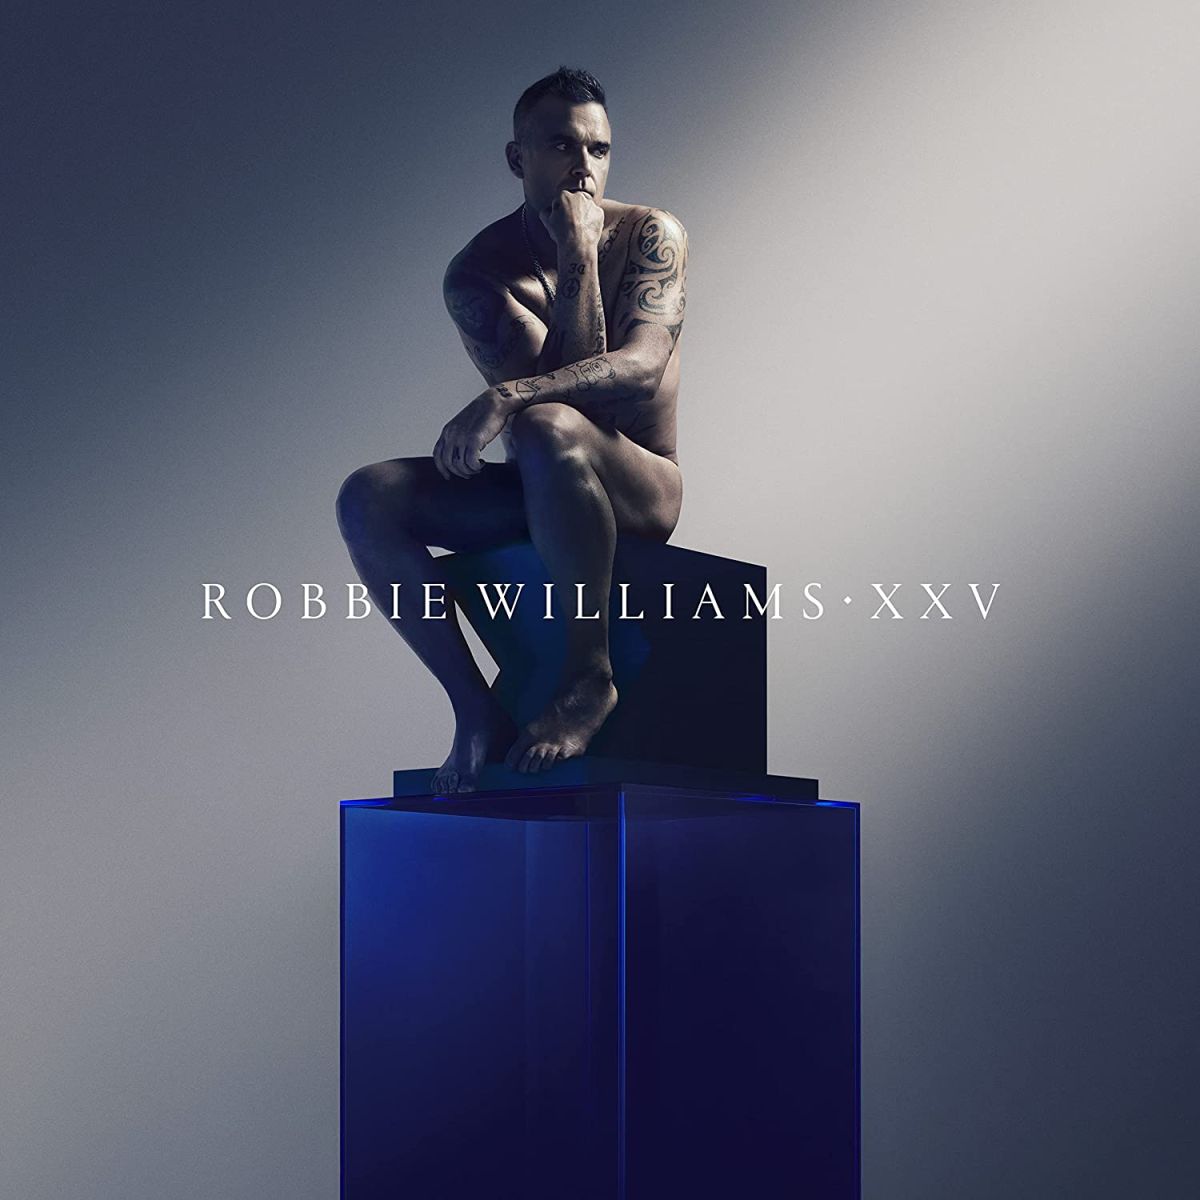 Robbie Williams: A living legend celebrates his illustrious career